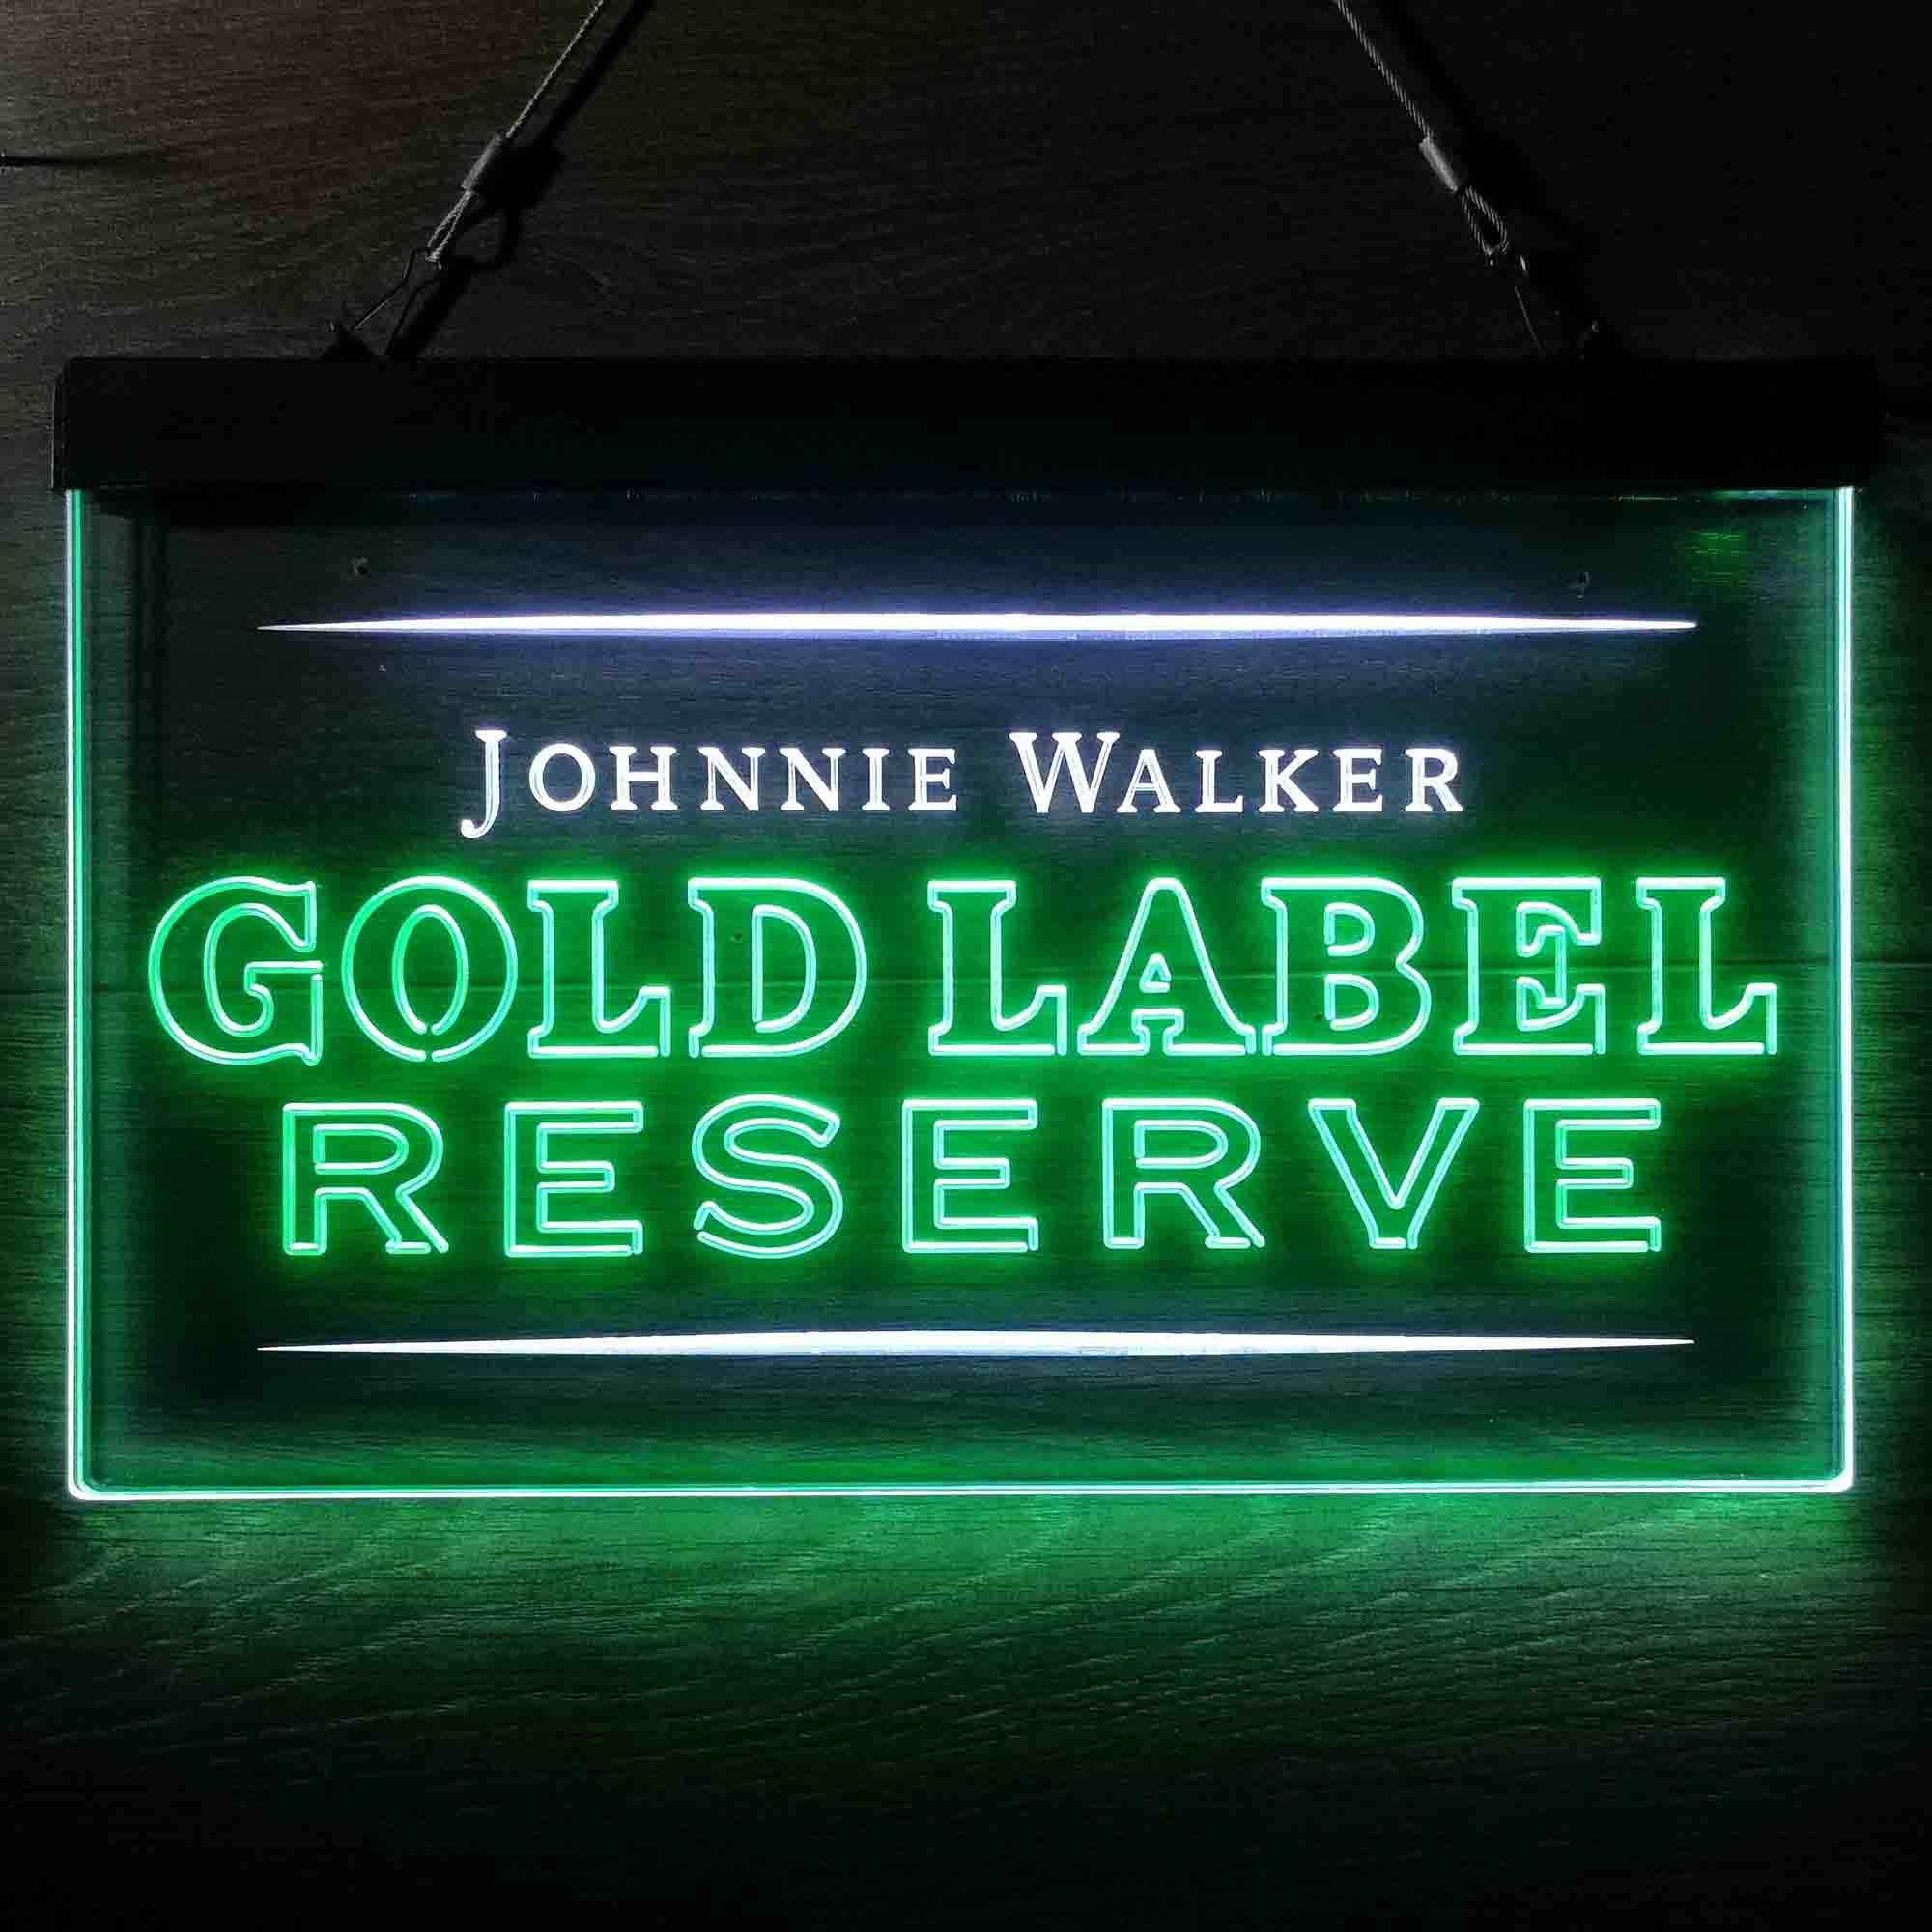 Johnnie Walker Gold Label Reserve Neon-Like LED Sign